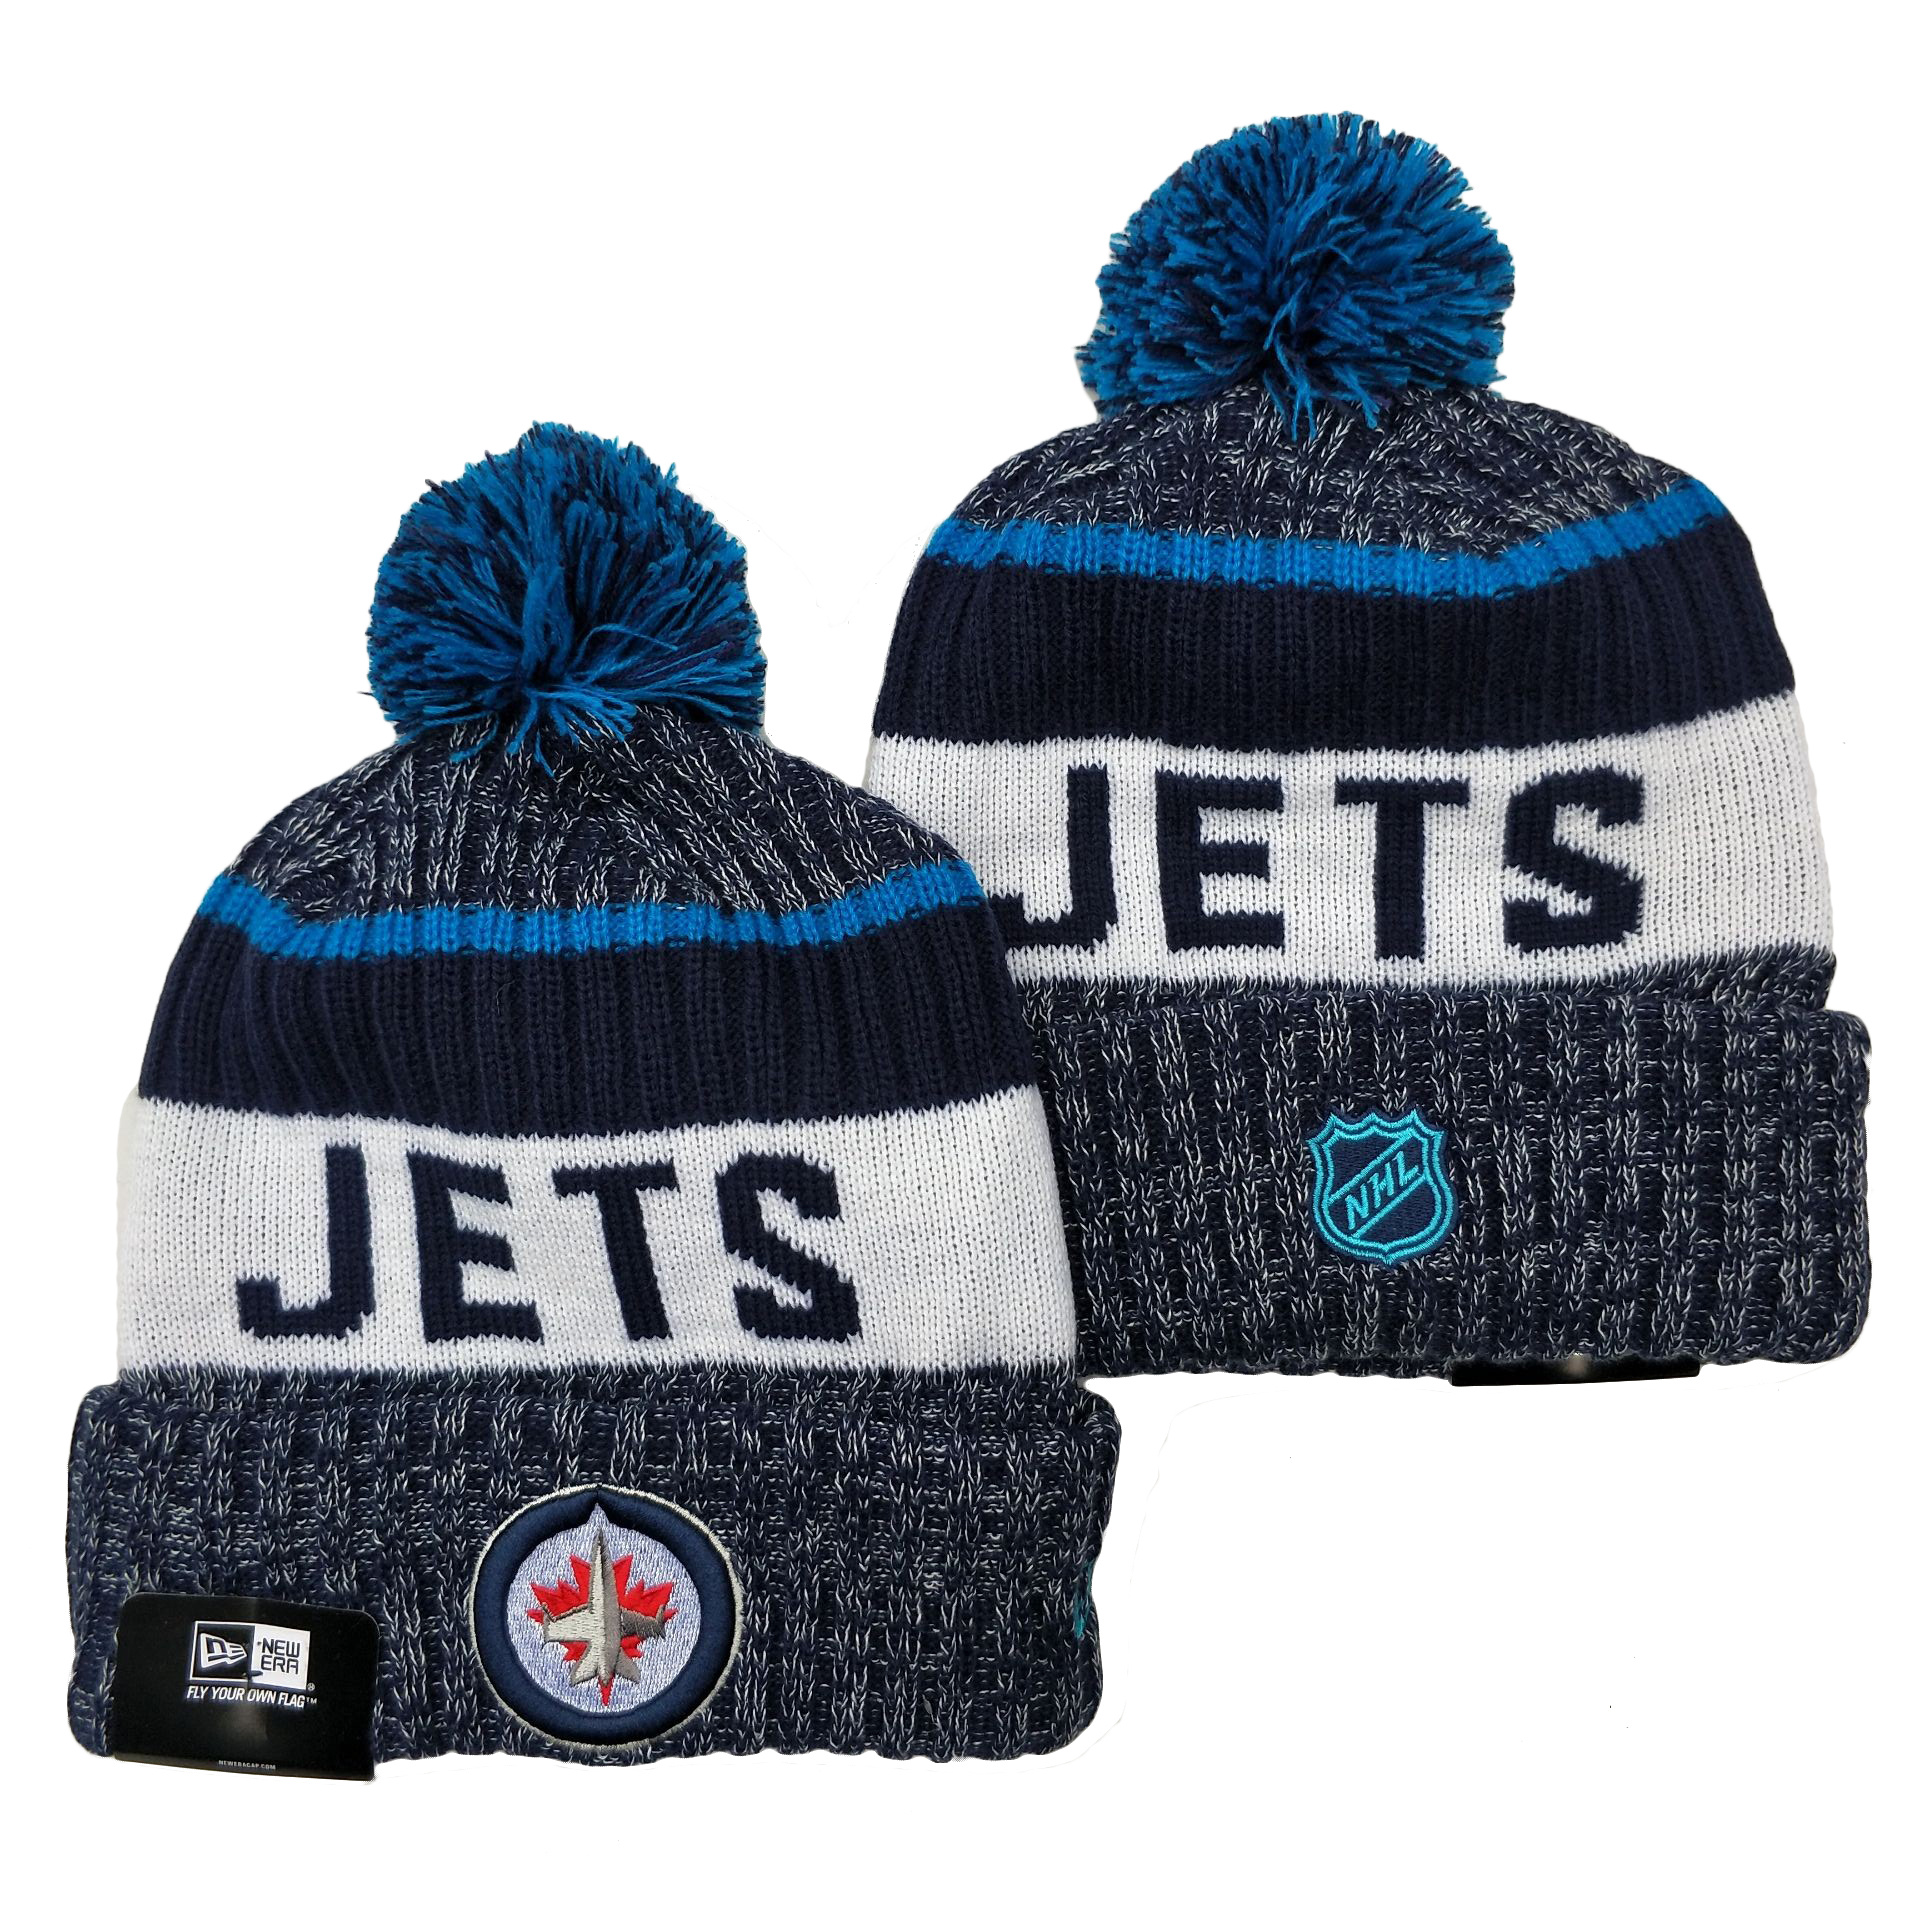 Winnipeg Jets Knit Hats -4